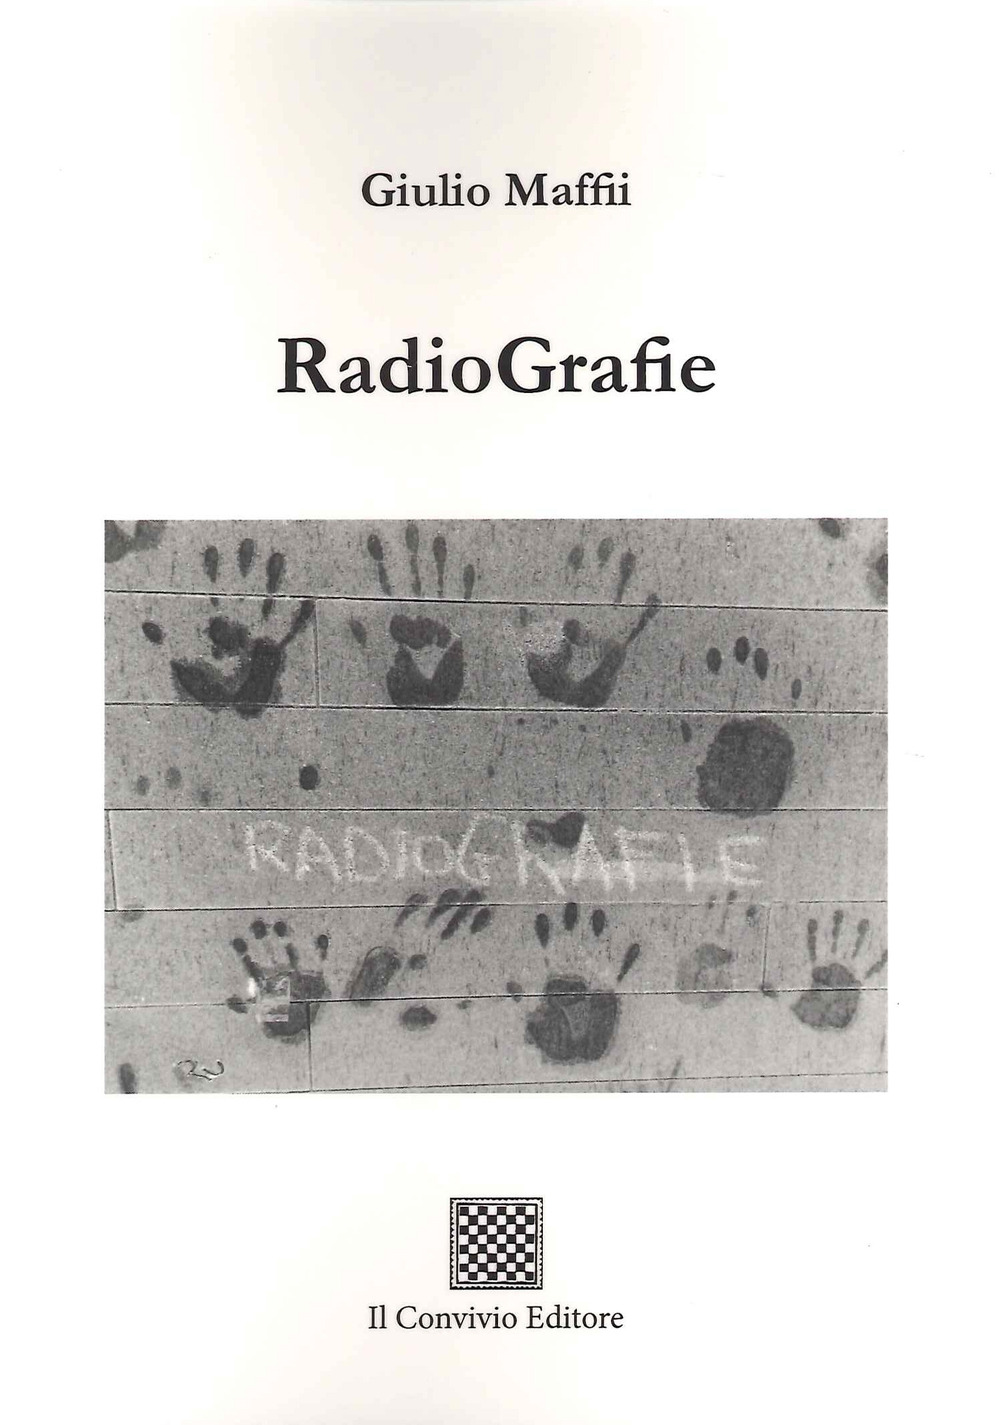 RadioGrafie